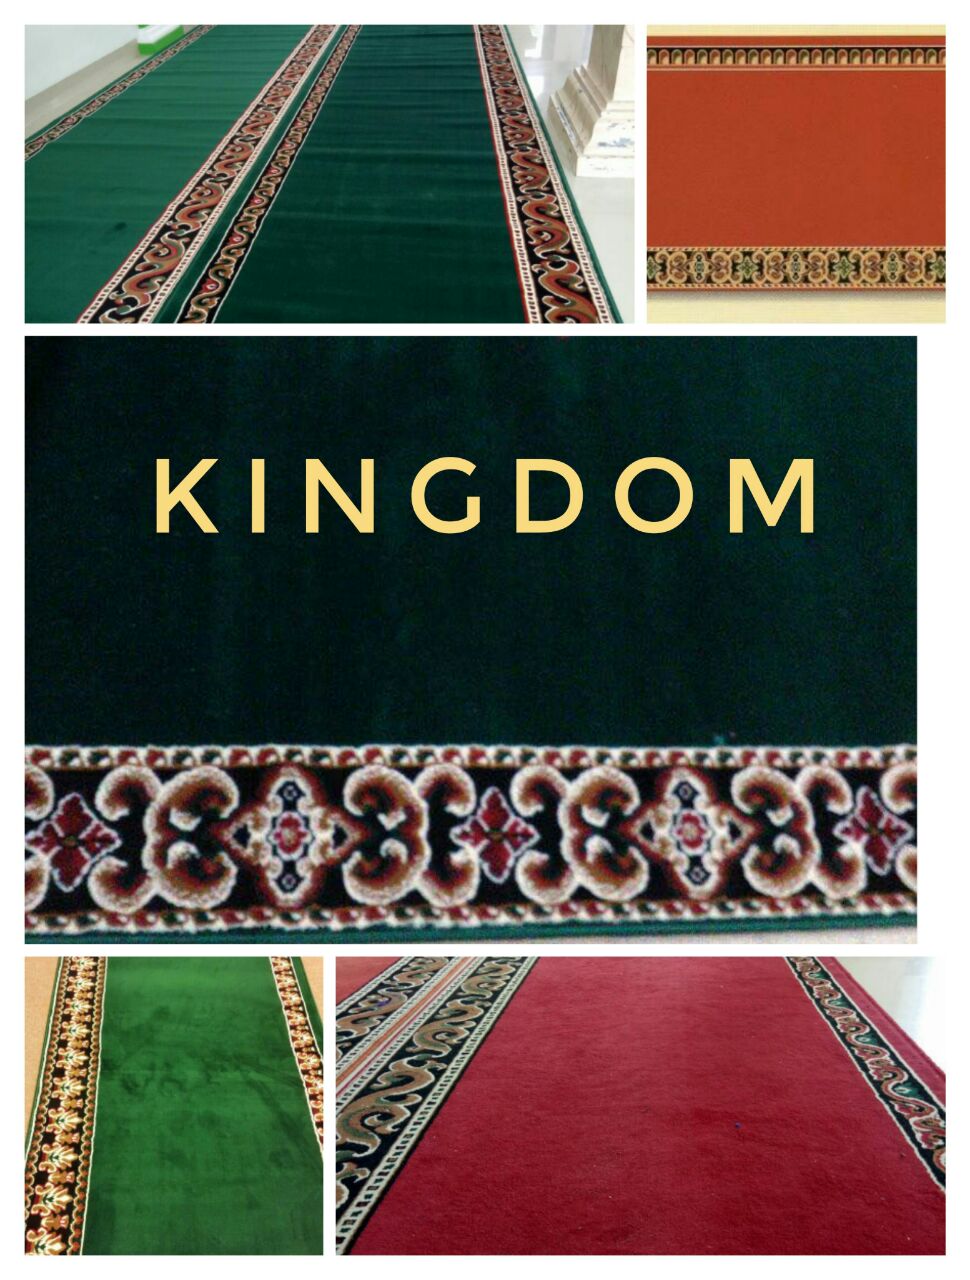 Harga Karpet Masjid Merk Kingdom